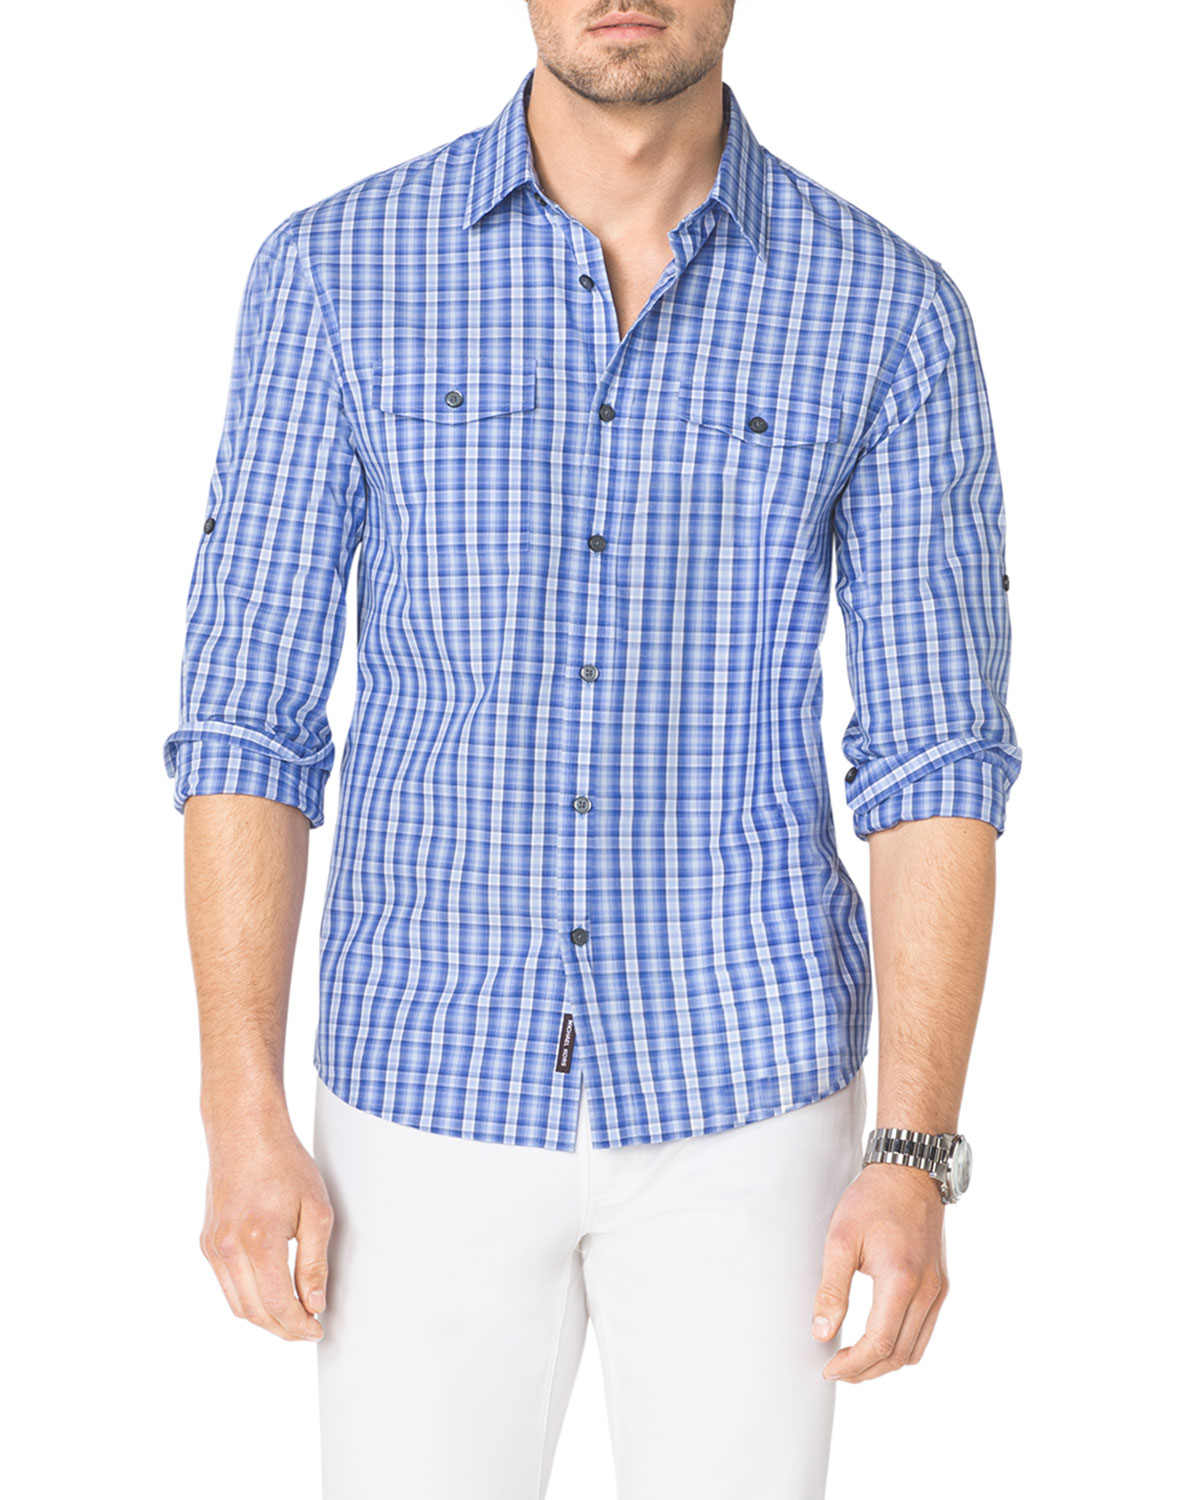 Lyst - Michael kors Multi-Check Two-Pocket Shirt for Men